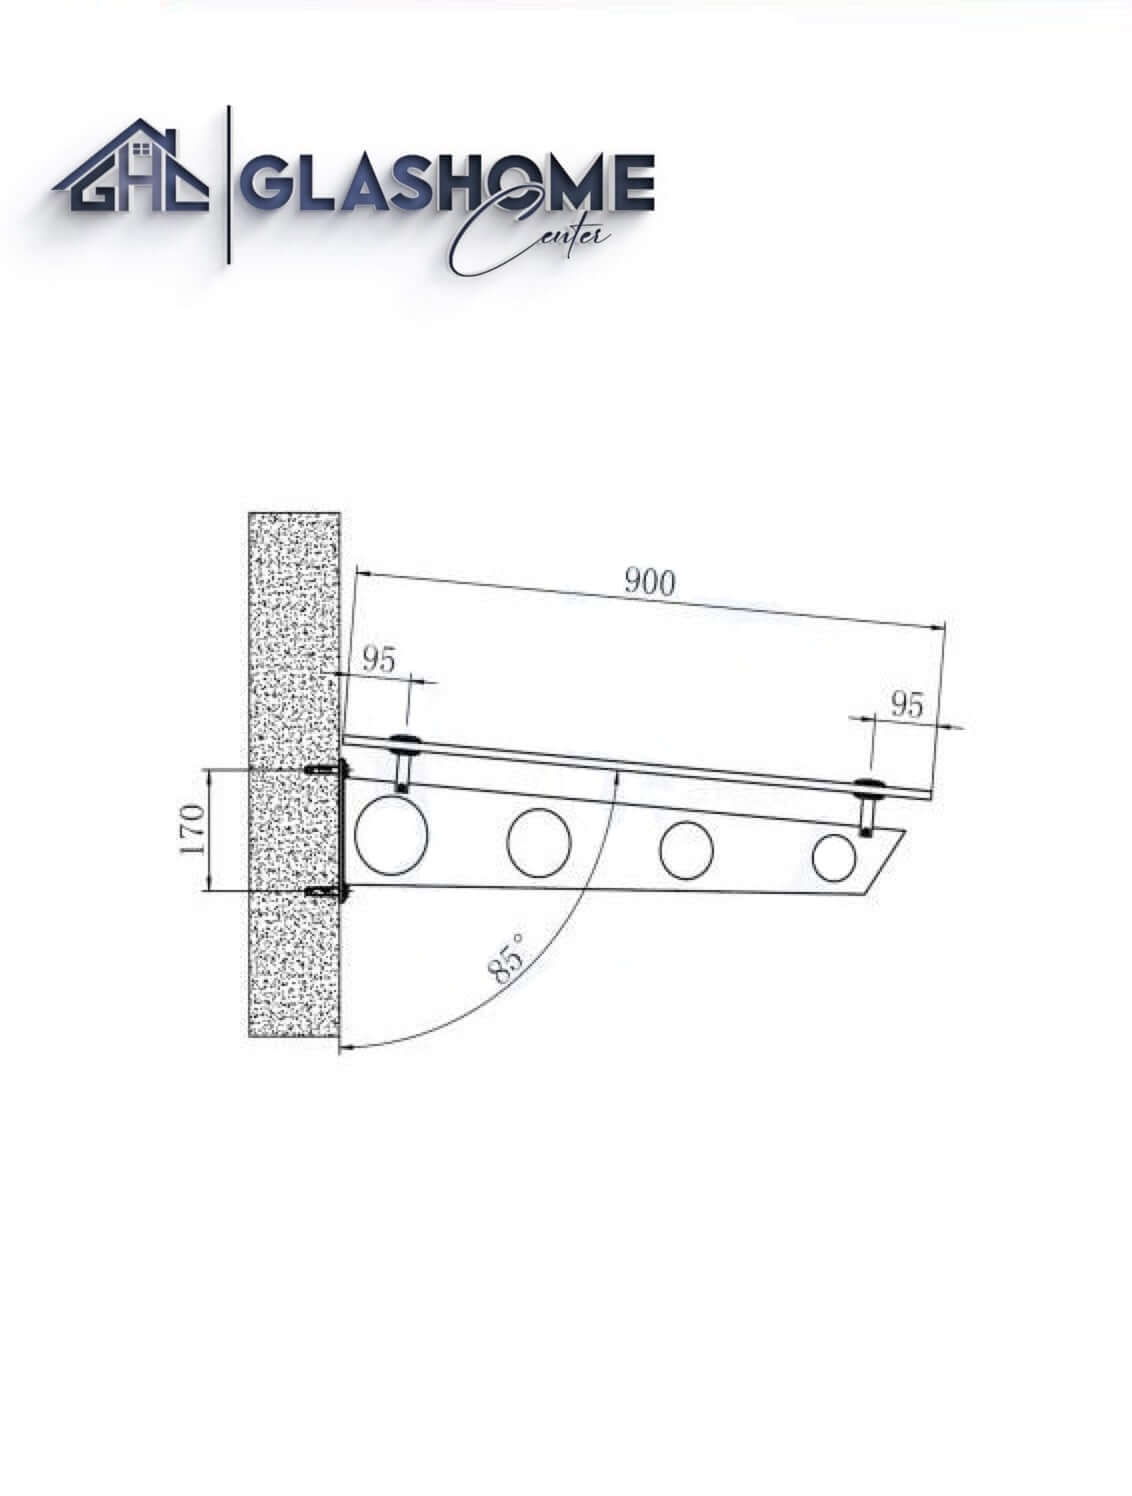 GlasHomeCenter - Glasvordach - Milchglas - 230x90cm - 13.1mm VSG - inkl. 3 schwarze Edelstahlhalterungen Variante "Stockholm"